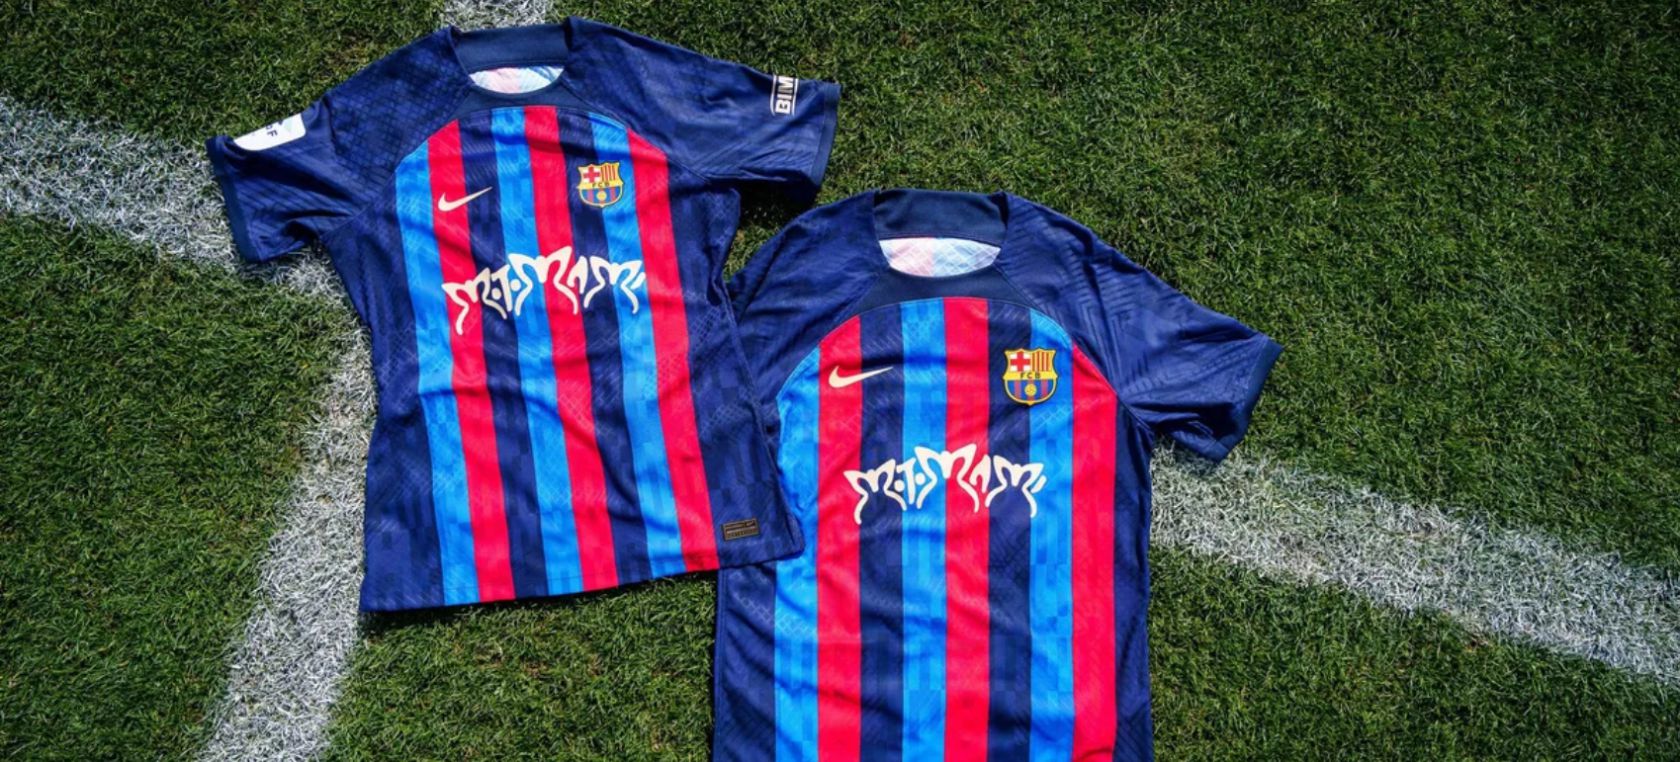 El FC Barcelona lanza una camiseta exclusiva (y carísima) con el logo de 'Motomami' de Rosalía